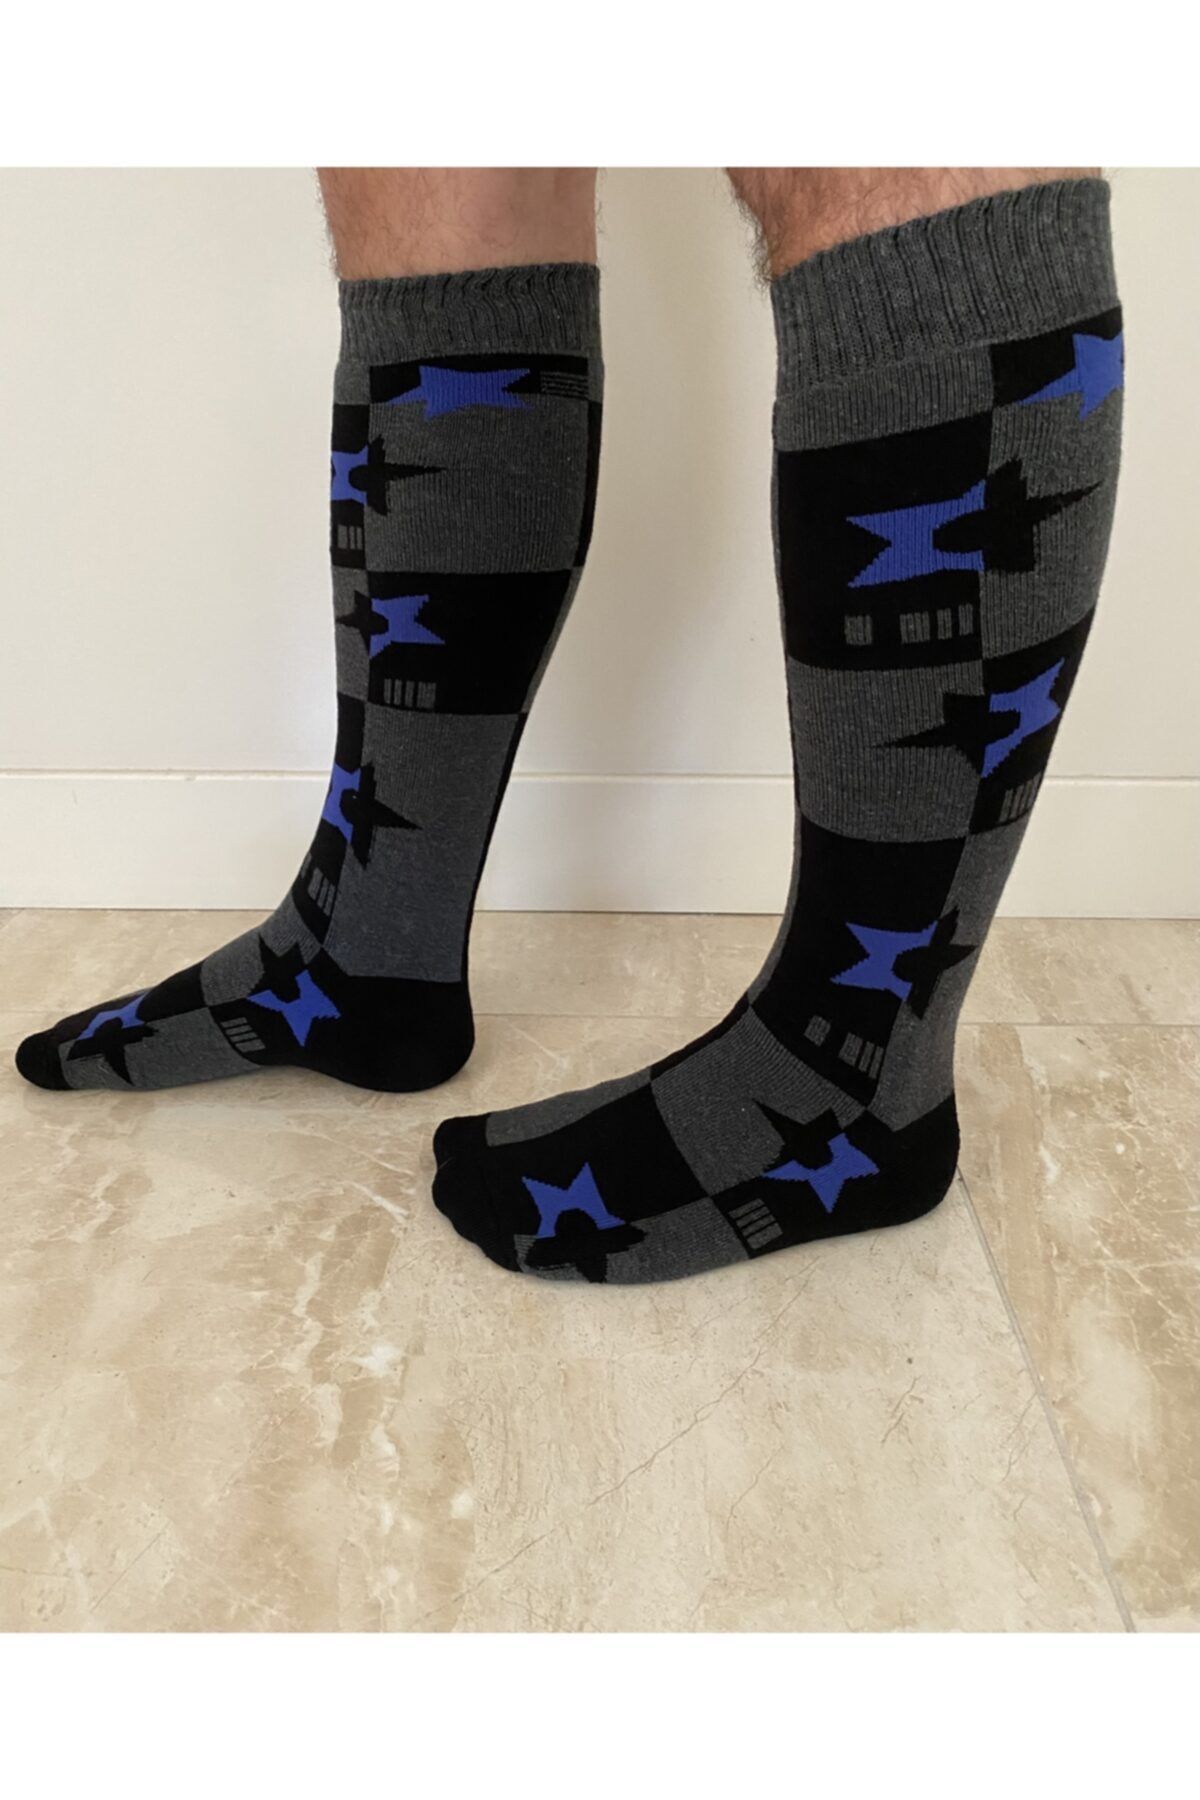 YABA Dizaltı Kayak Çorabı - Snowboard Çorabı - Siyah Mavi Yıldızlar Termal Çorap